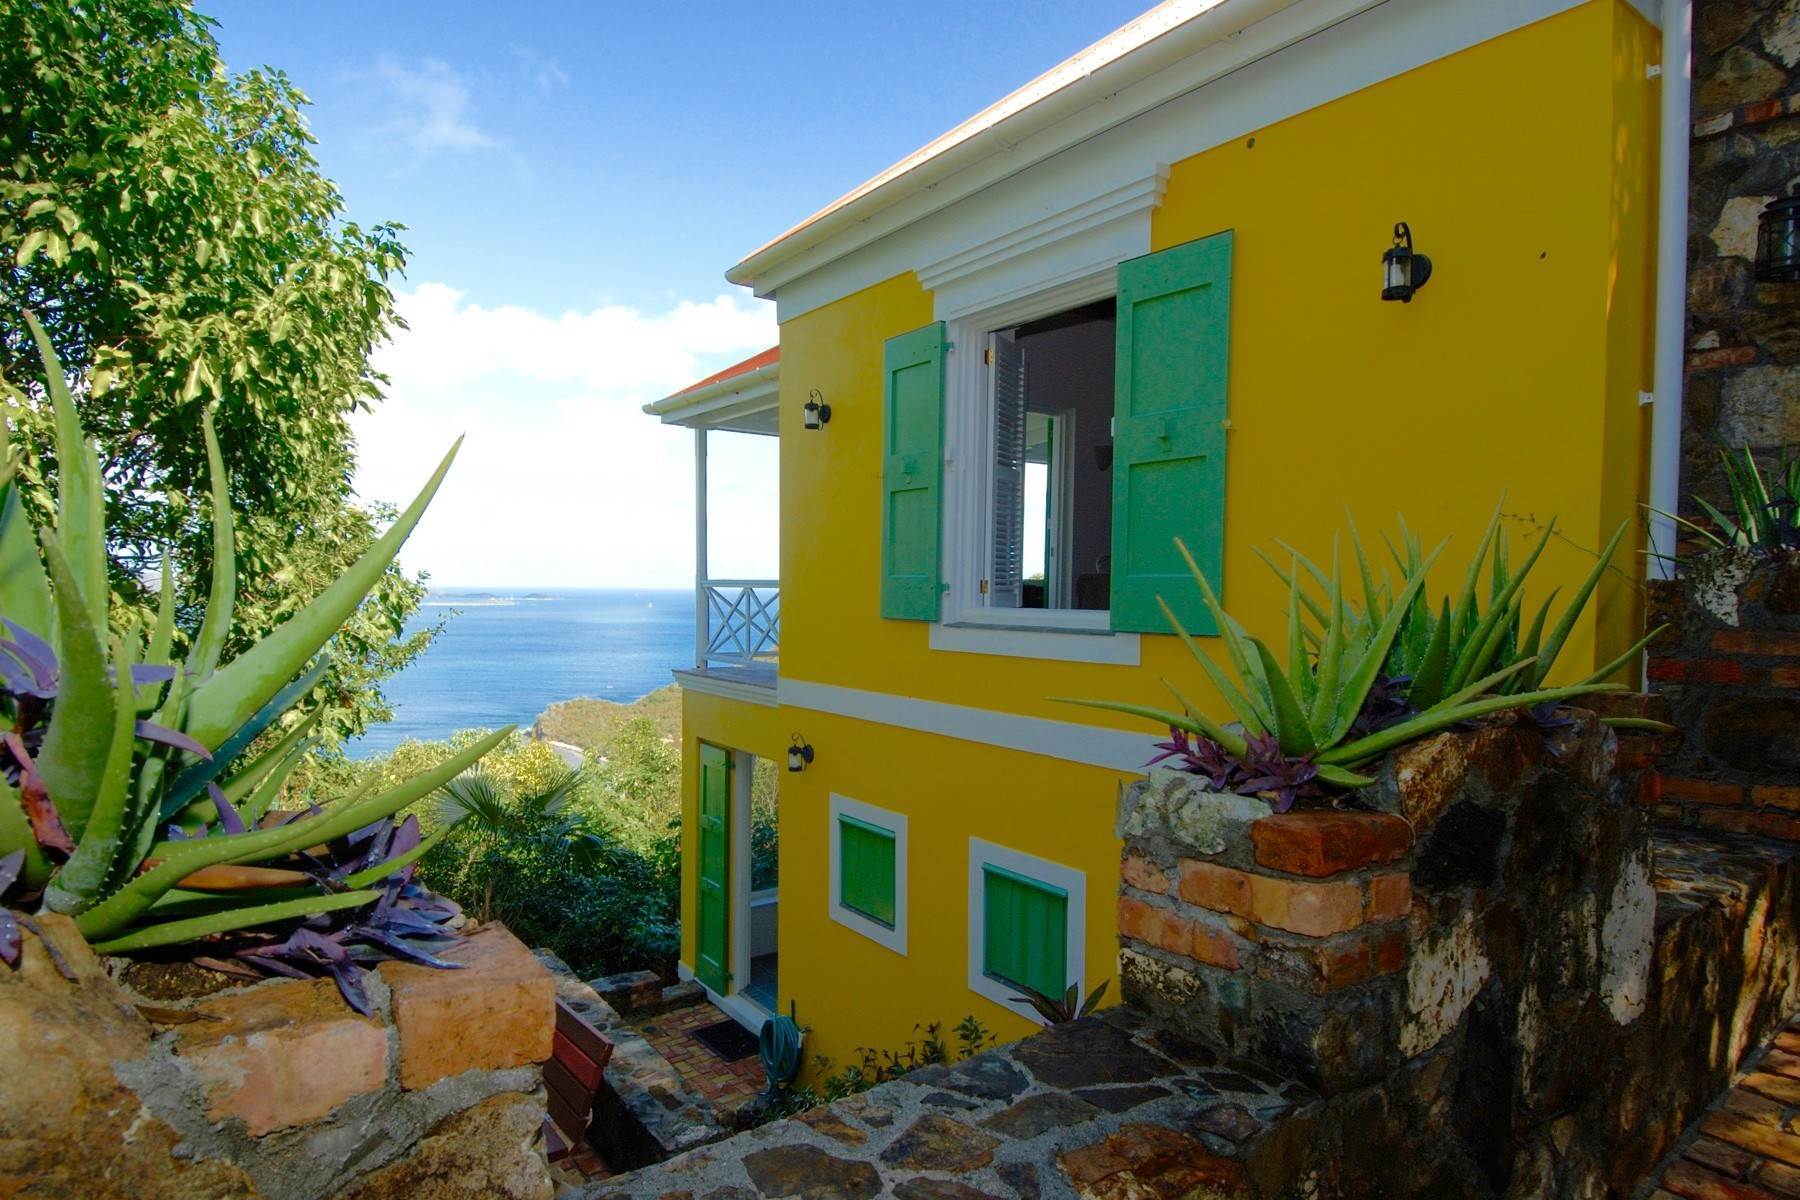 2. Single Family Homes für Verkauf beim Belmont, Tortola Britische Jungferninseln